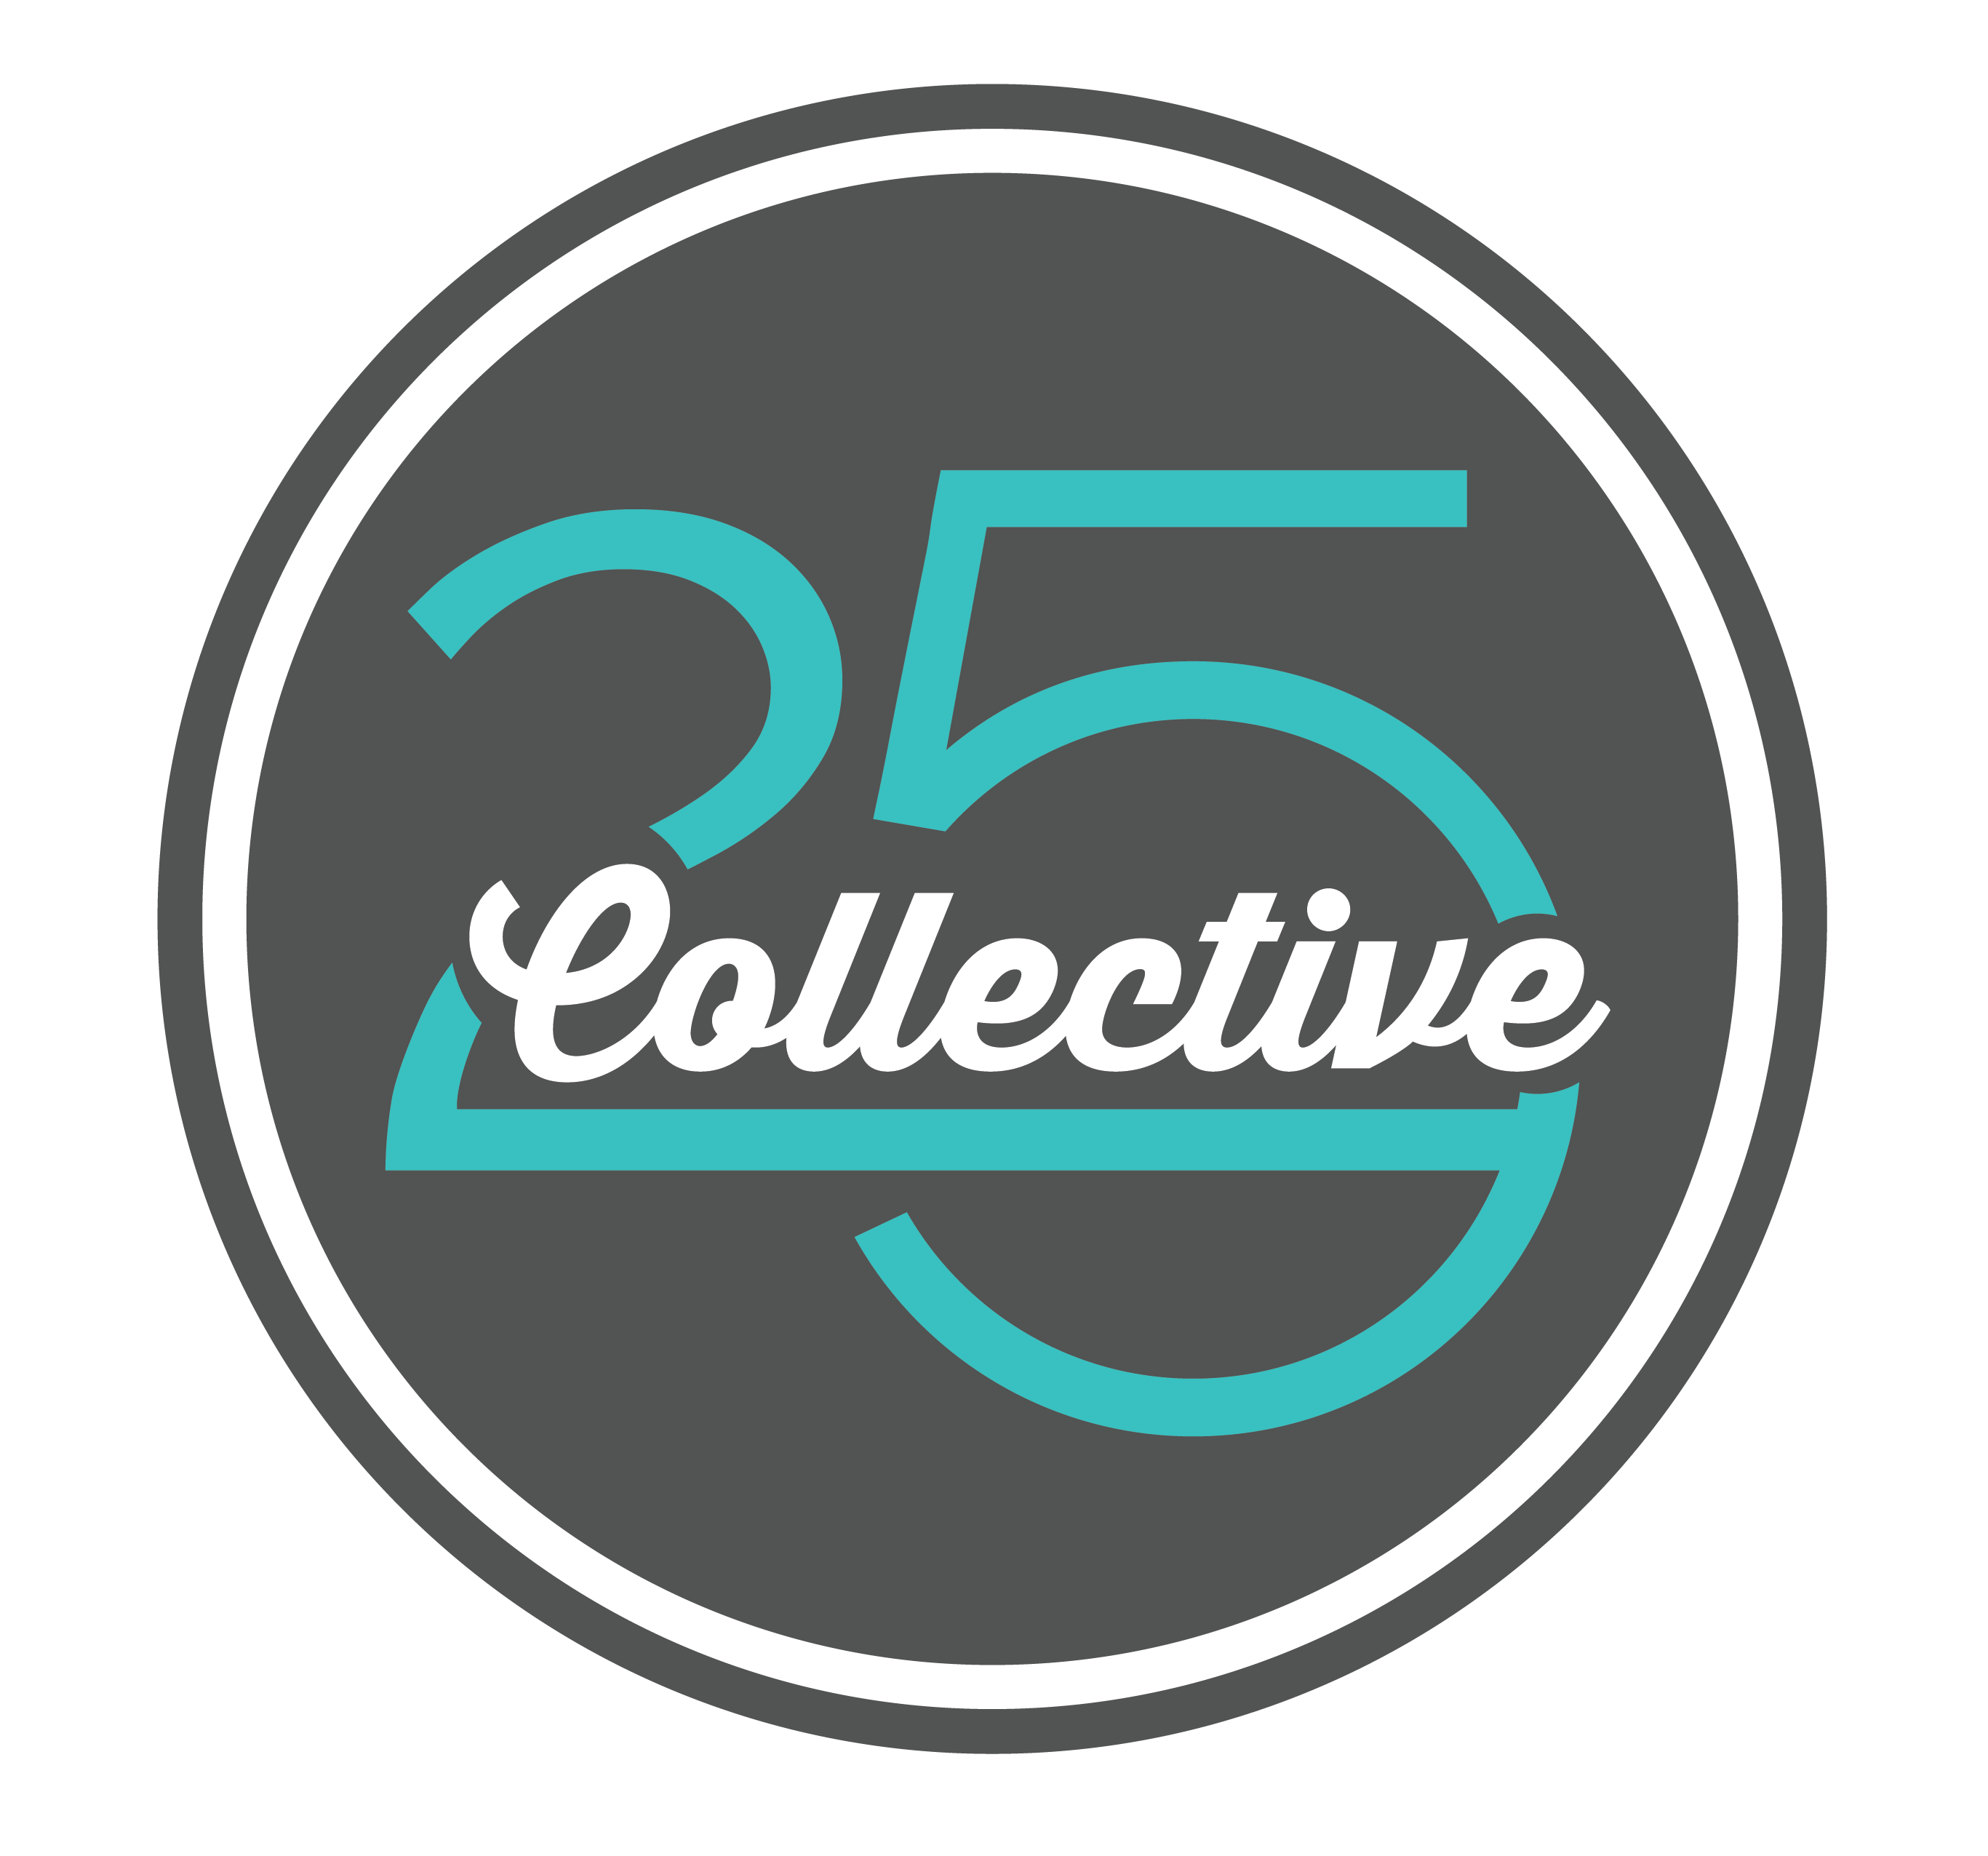 25 Collective Final Circle Logo (1)